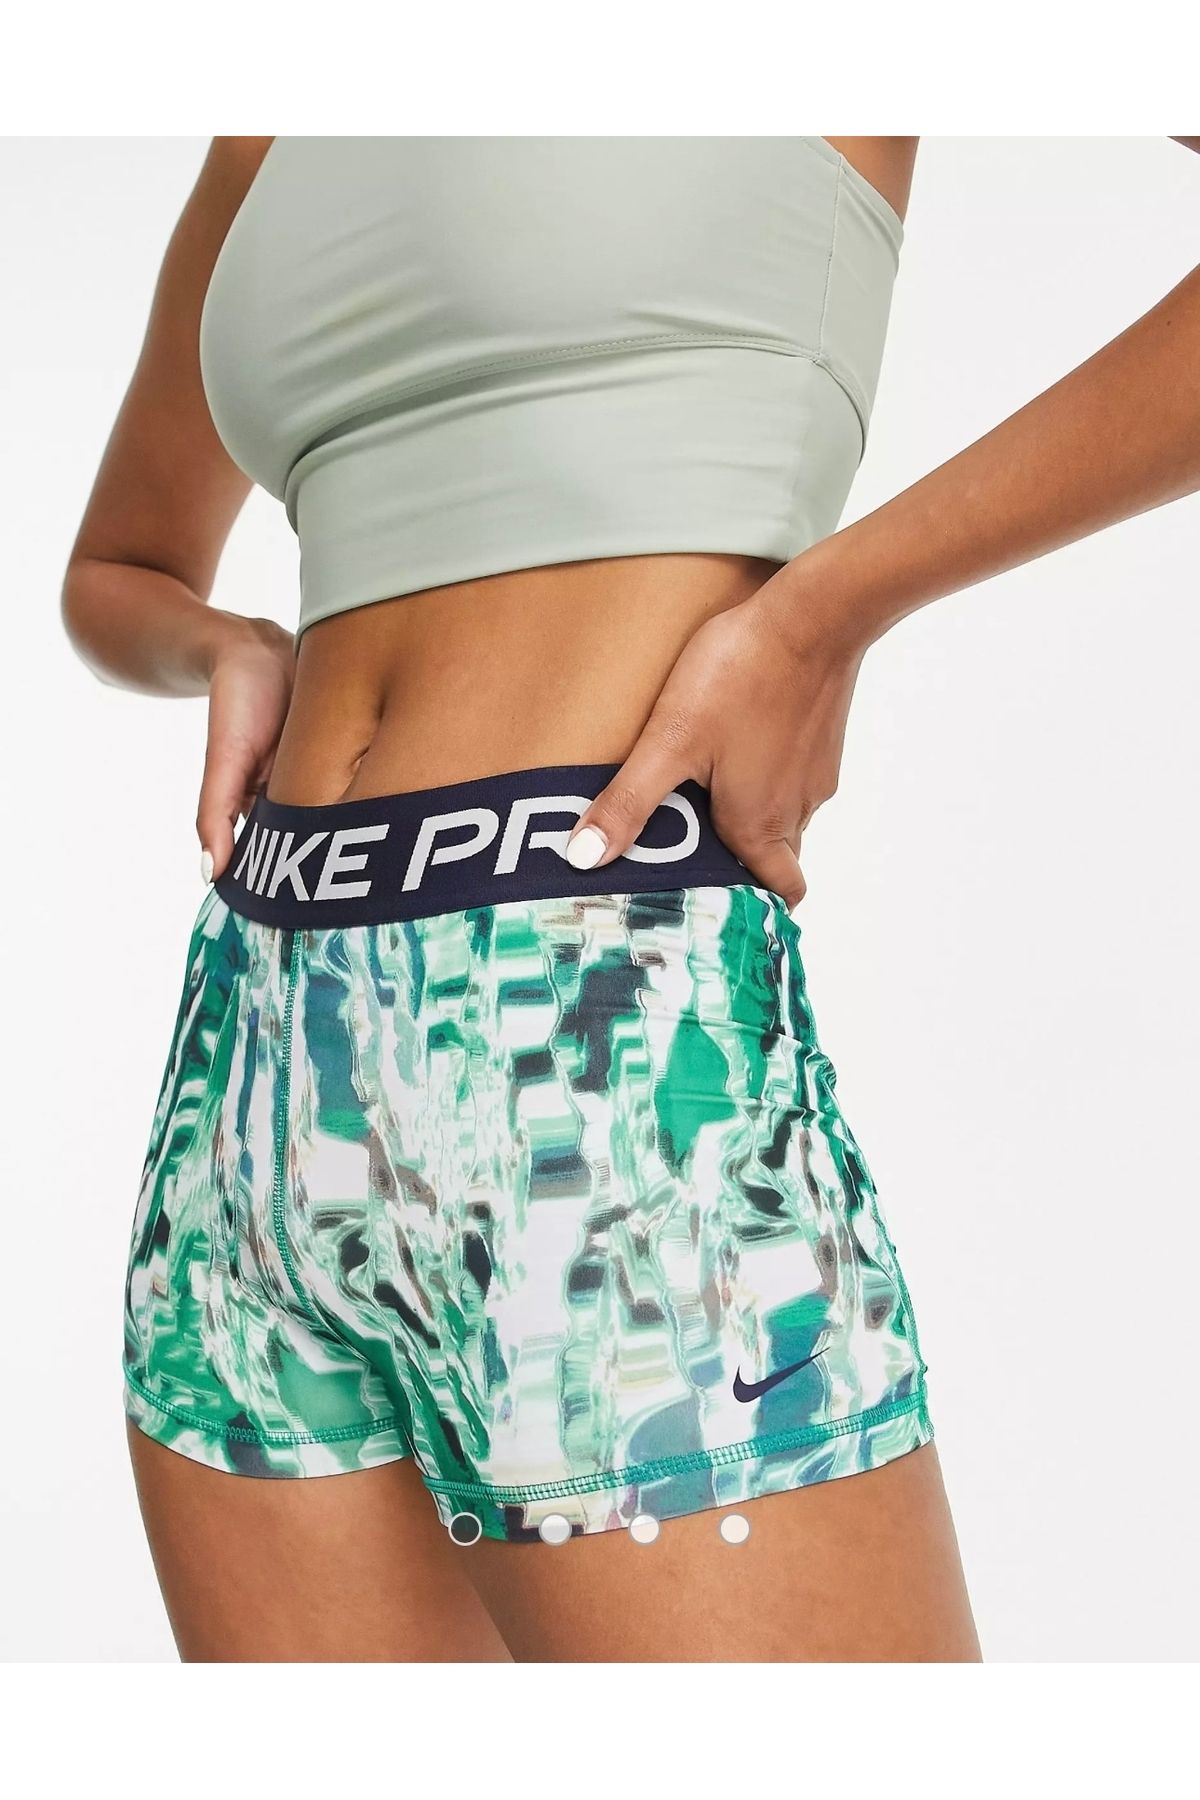 Nike Dri-fıt Women's Mid-rise All-over Print Shorts Kadin Yeşil Pro Tayt